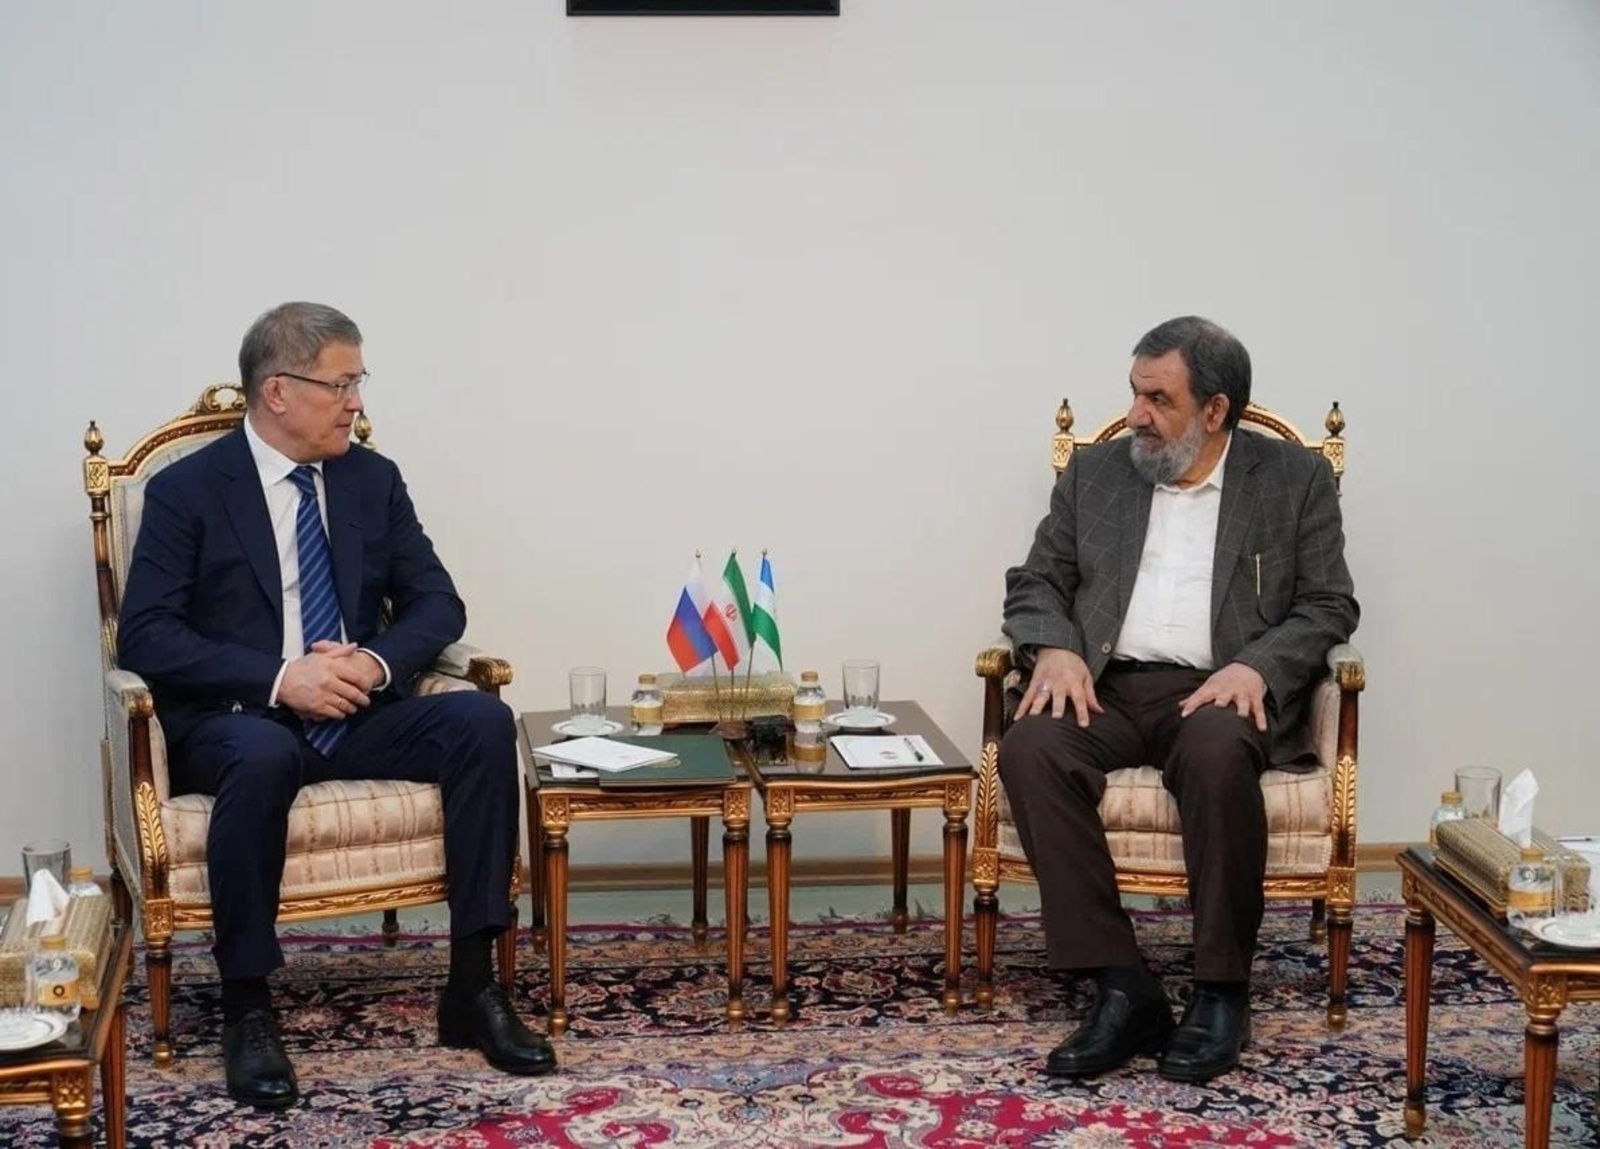 Встреча Главы Башкирии Радия Хабирова с Вице-президентом Ирана по экономическим вопросам Мохсеном Реза